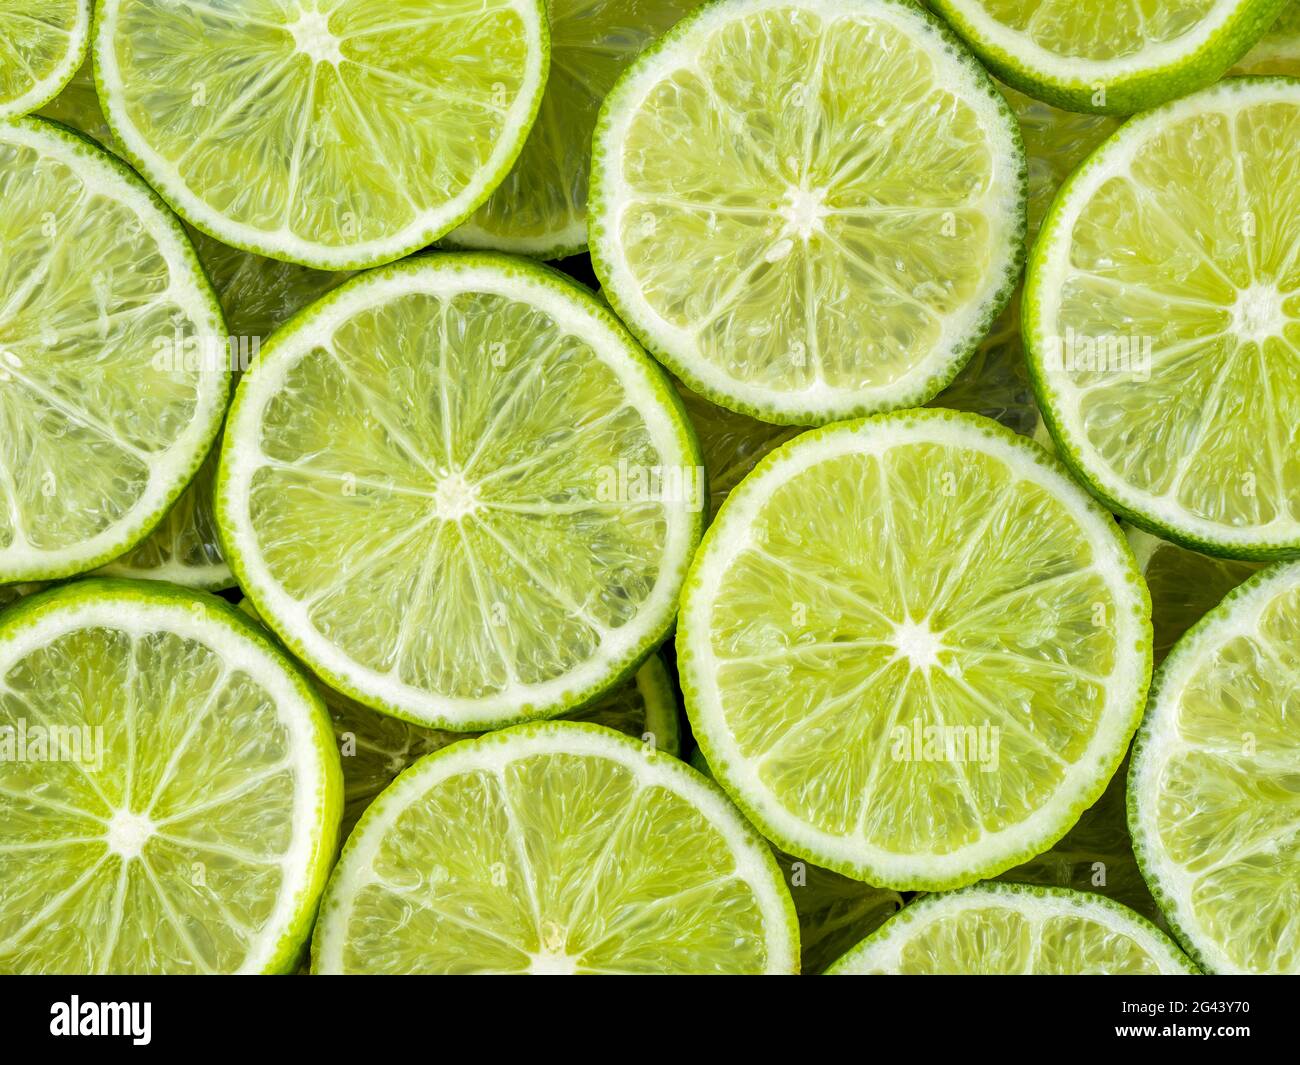 Vollständiges Bild von grünen Limettenscheiben Stockfoto